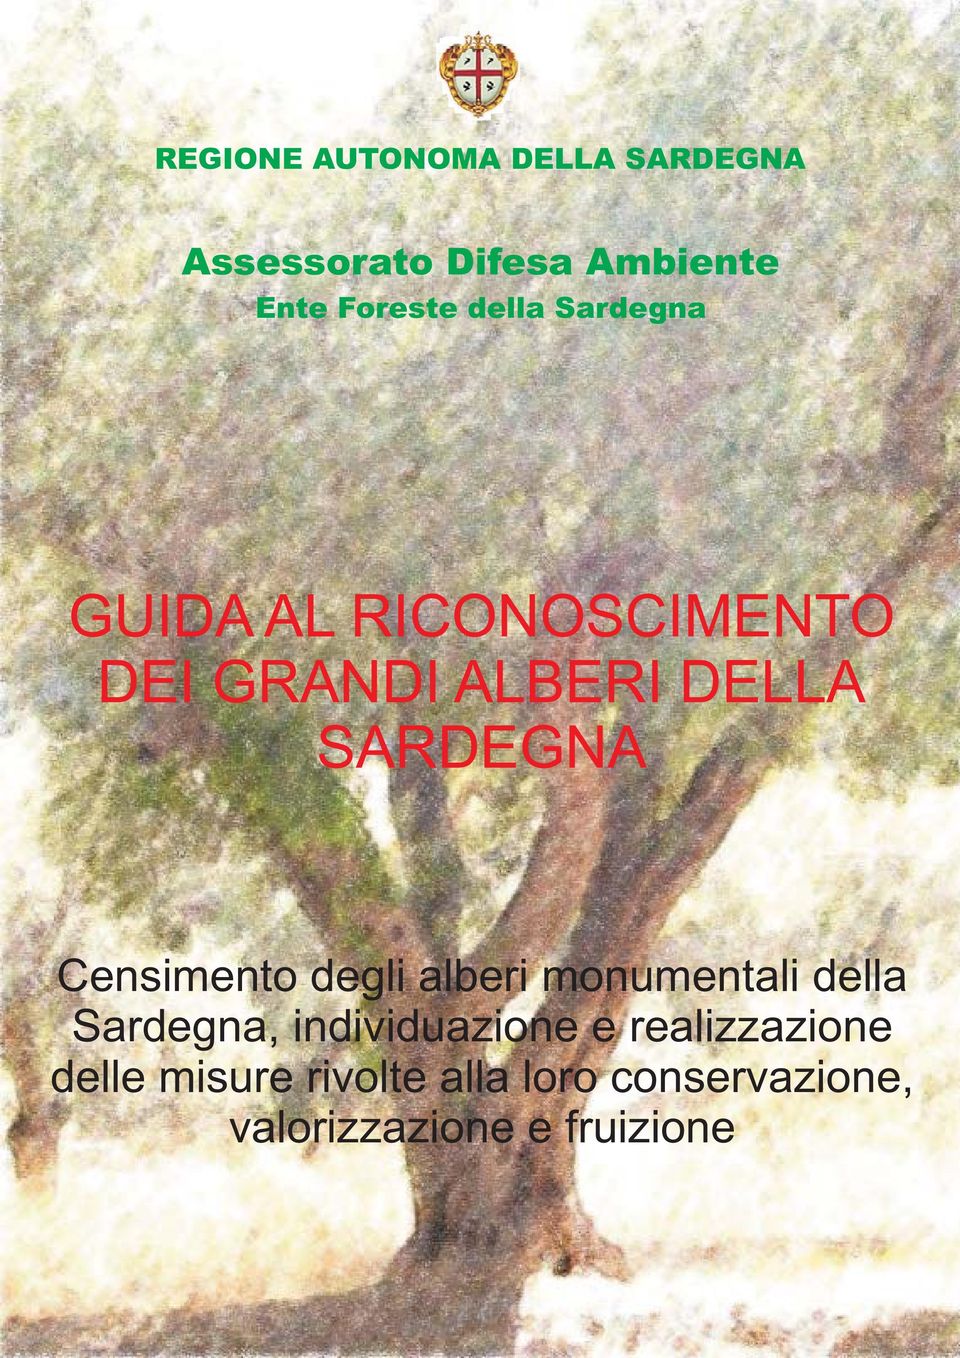 Censimento degli alberi monumentali della Sardegna, individuazione e